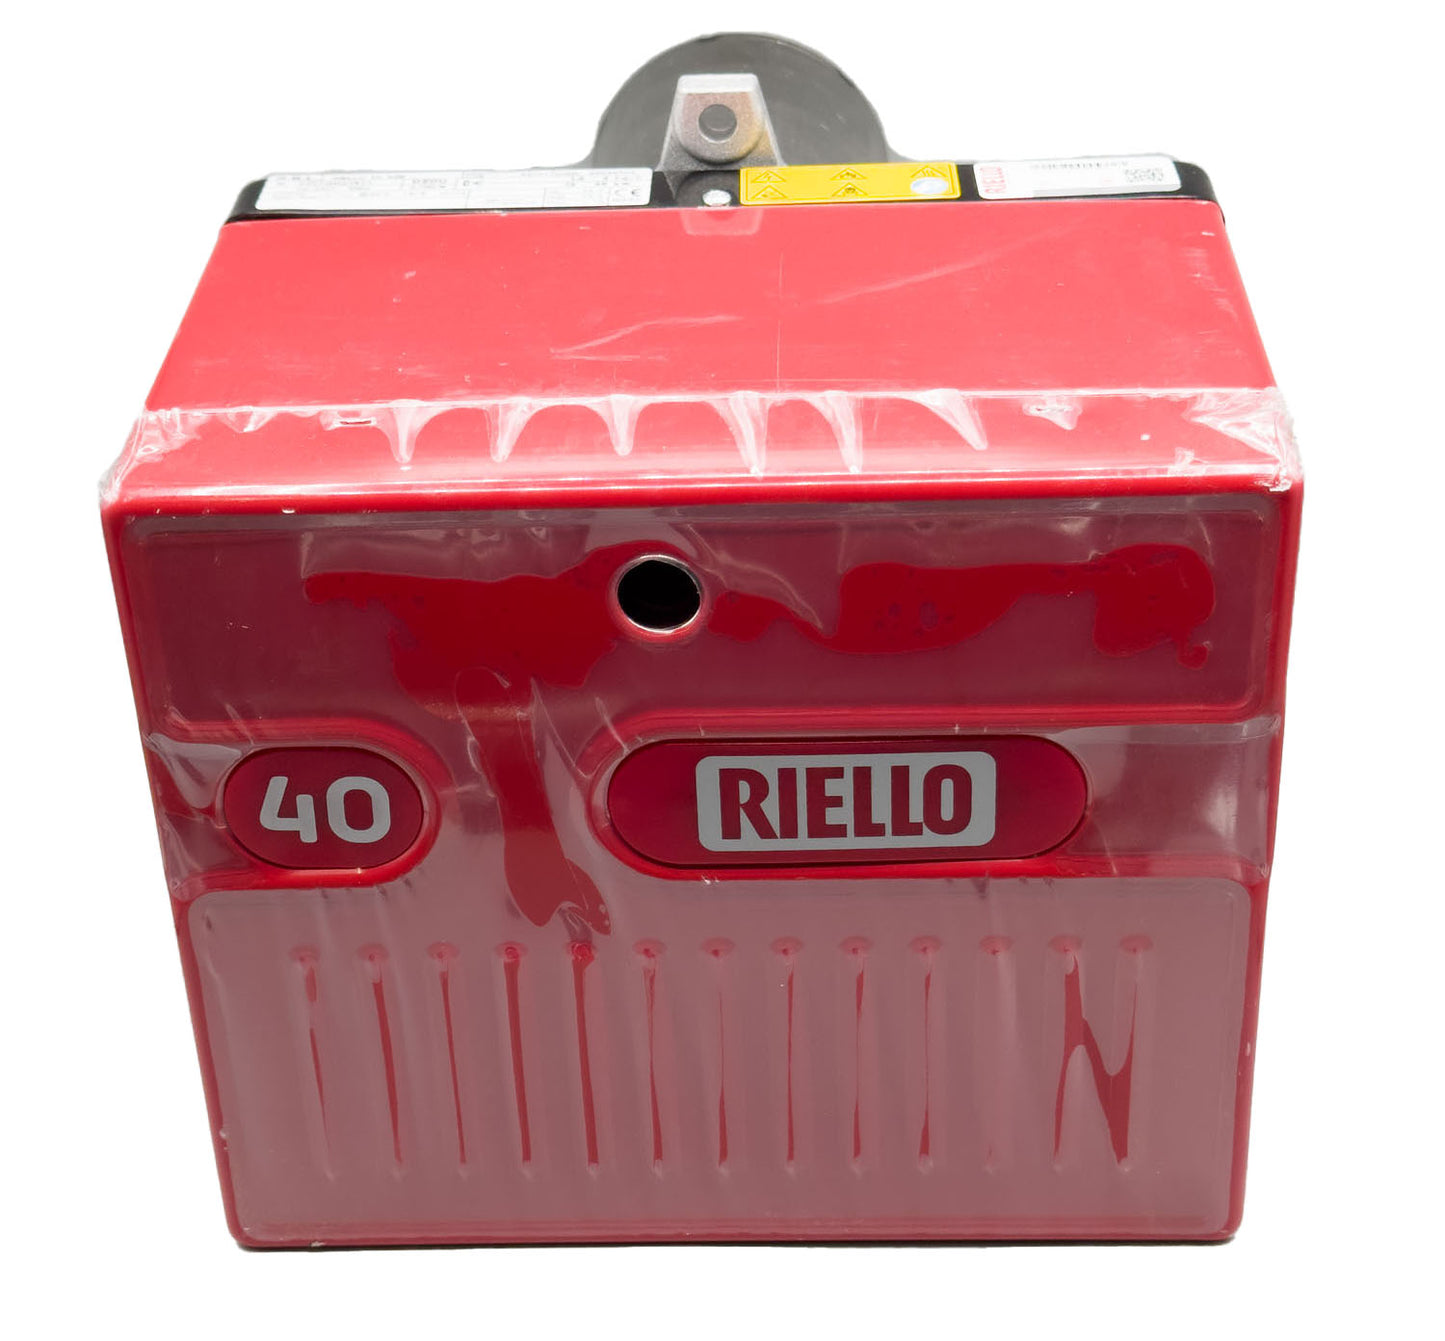 Riello R40 G3 Oil Burner | 19-35kw | 93mm Blast Tube | 3743753